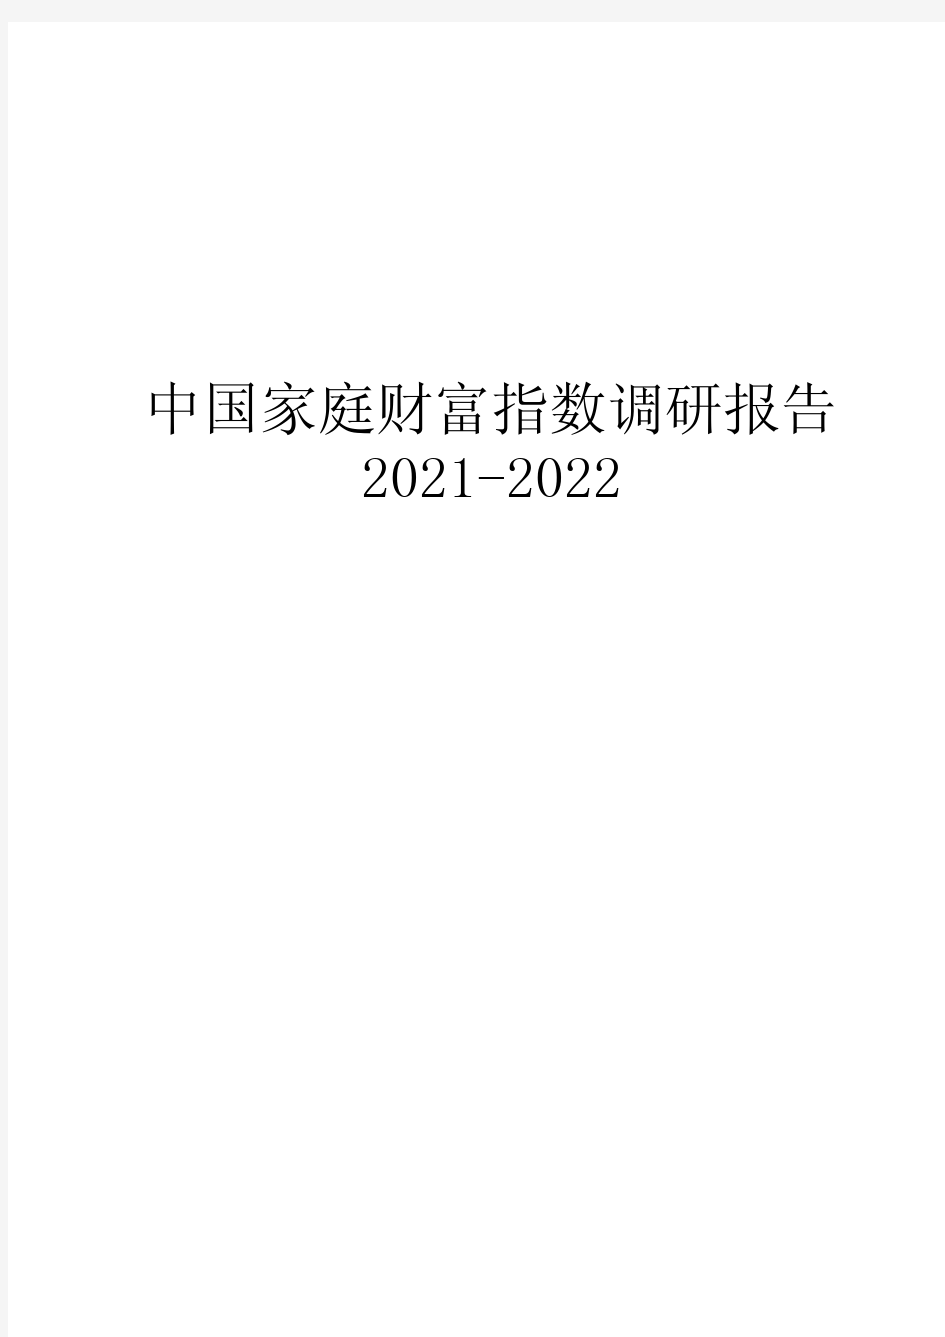 2020-2021年中国家庭财富指数调研报告